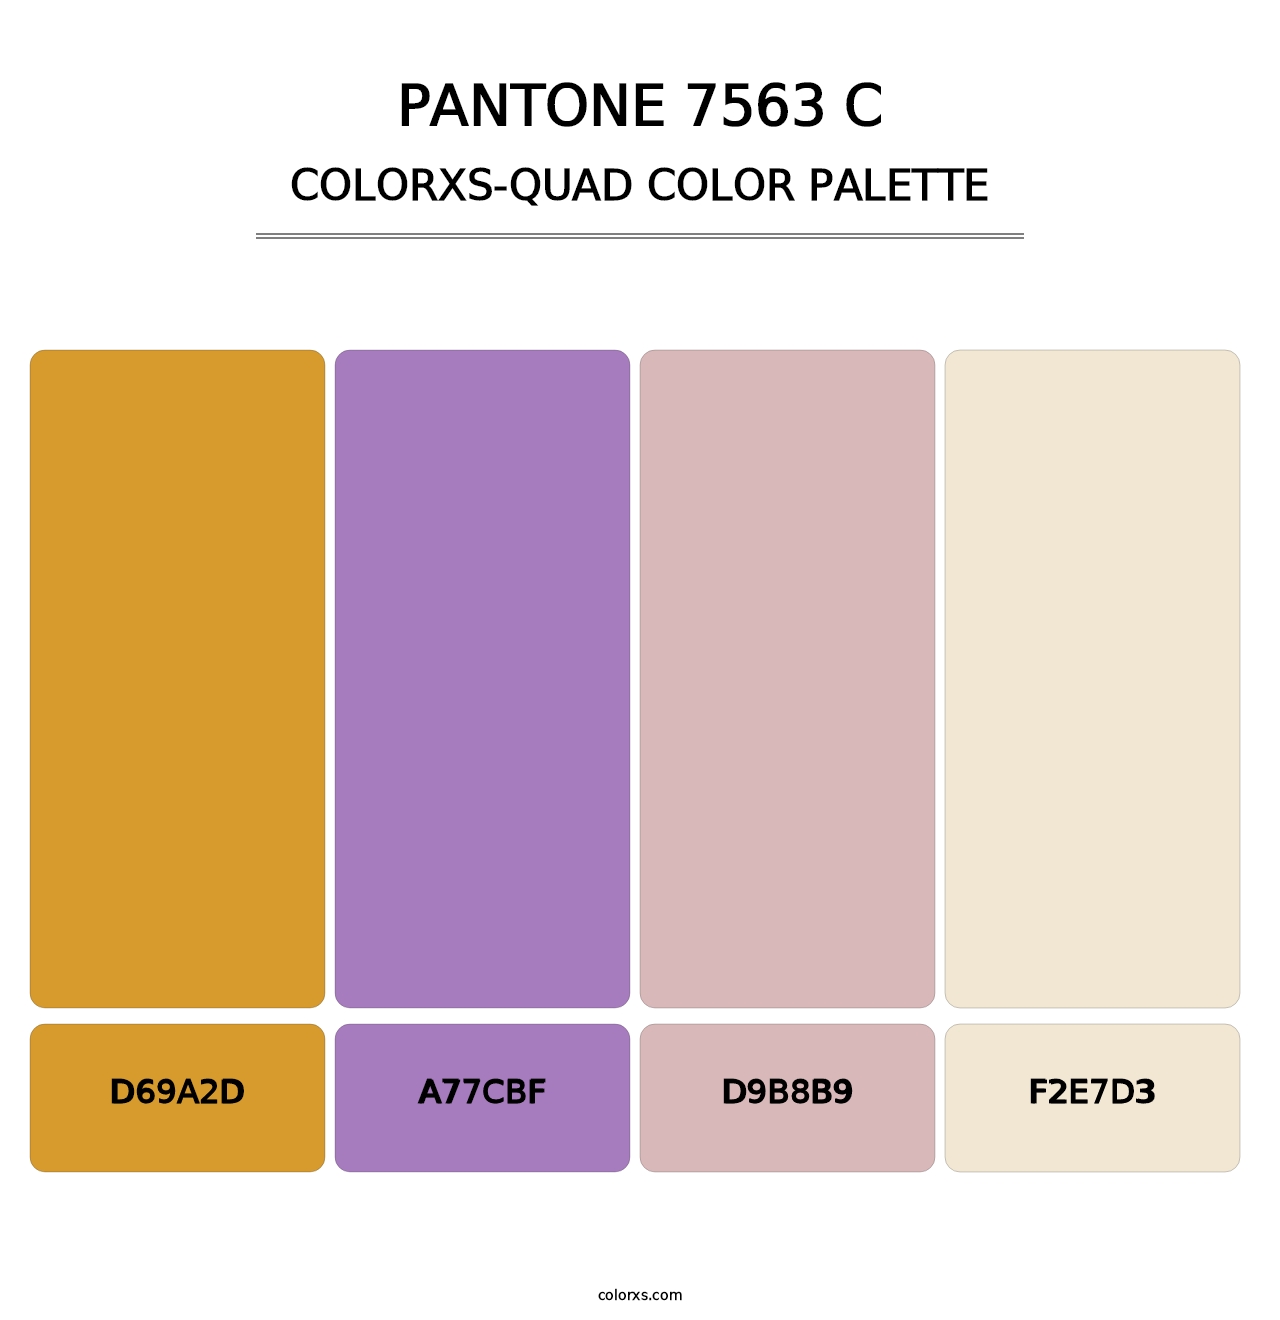 PANTONE 7563 C - Colorxs Quad Palette